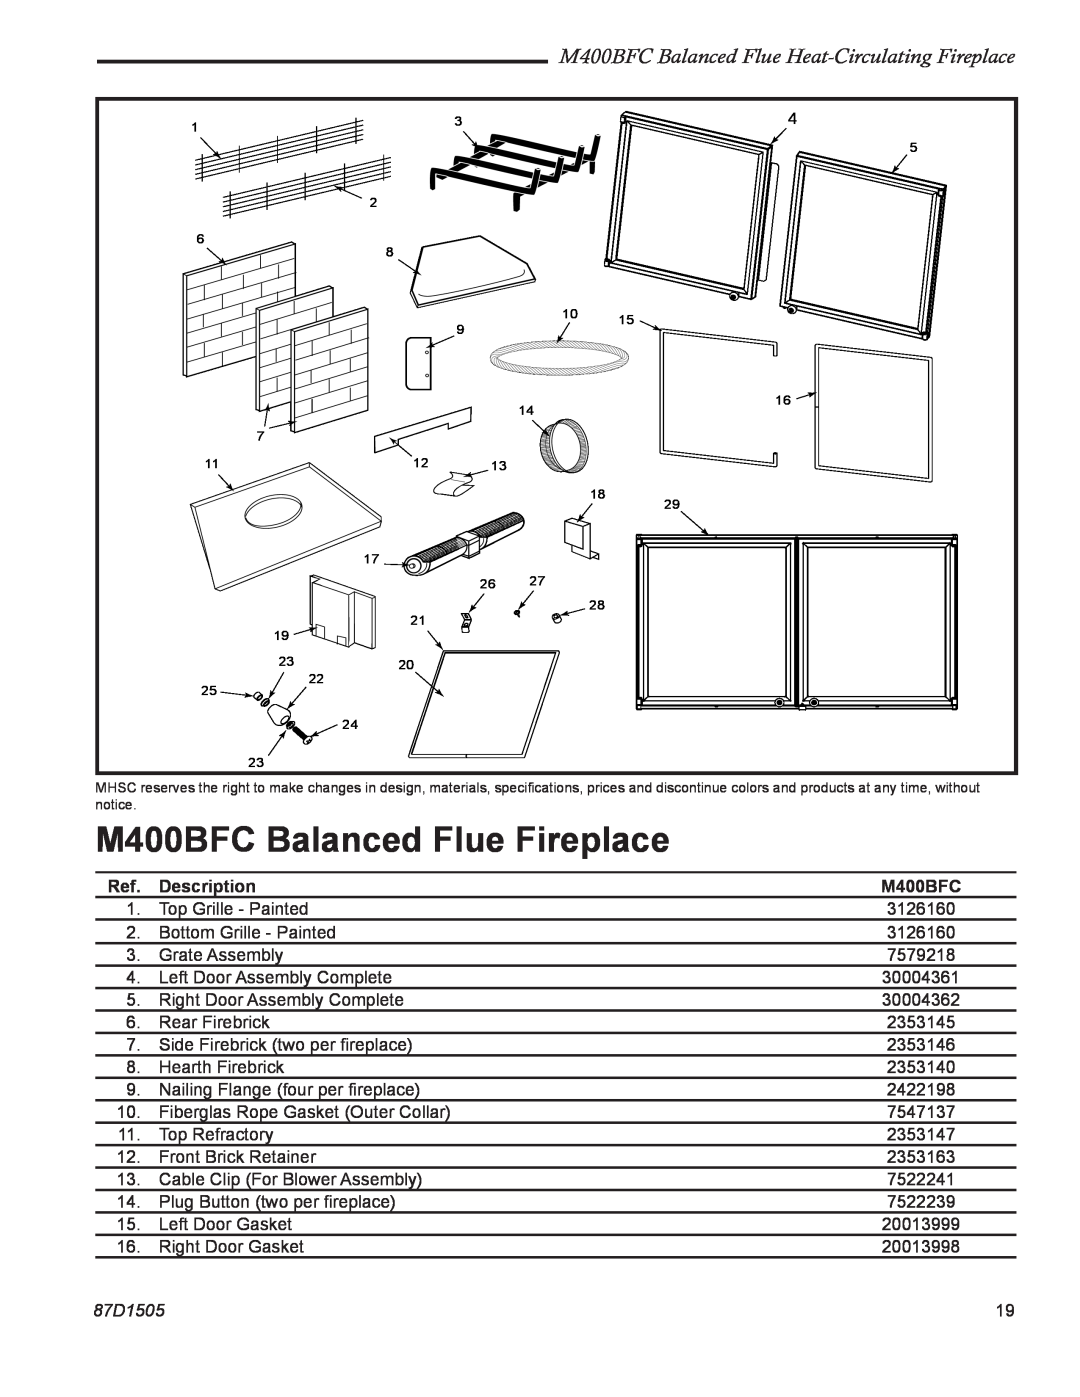 Monessen Hearth M400BFC Balanced Flue Fireplace, M400BFC Balanced Flue Heat-Circulating Fireplace, Description, 87D1505 